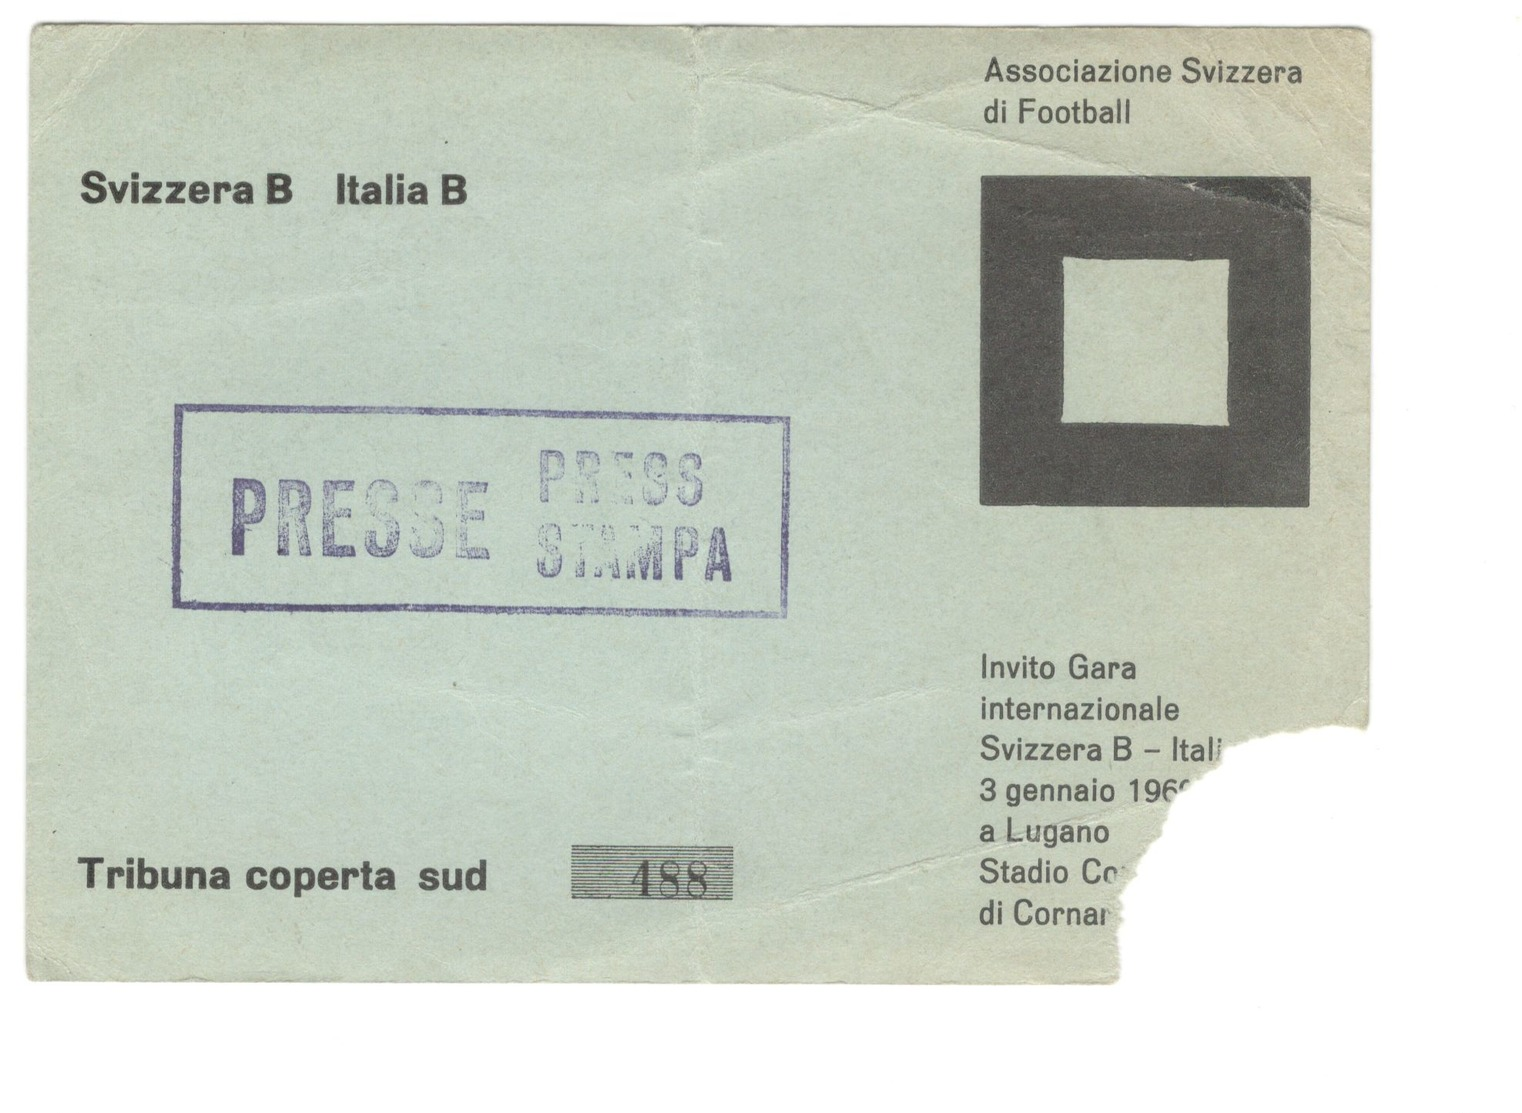 3 GENNAIO 1960 - LUGANO - SVIZZERA B Vs ITALIA B - STADIO COMUNALE DI CORNAREDO - BIGLIETTO CALCIO - Biglietti D'ingresso